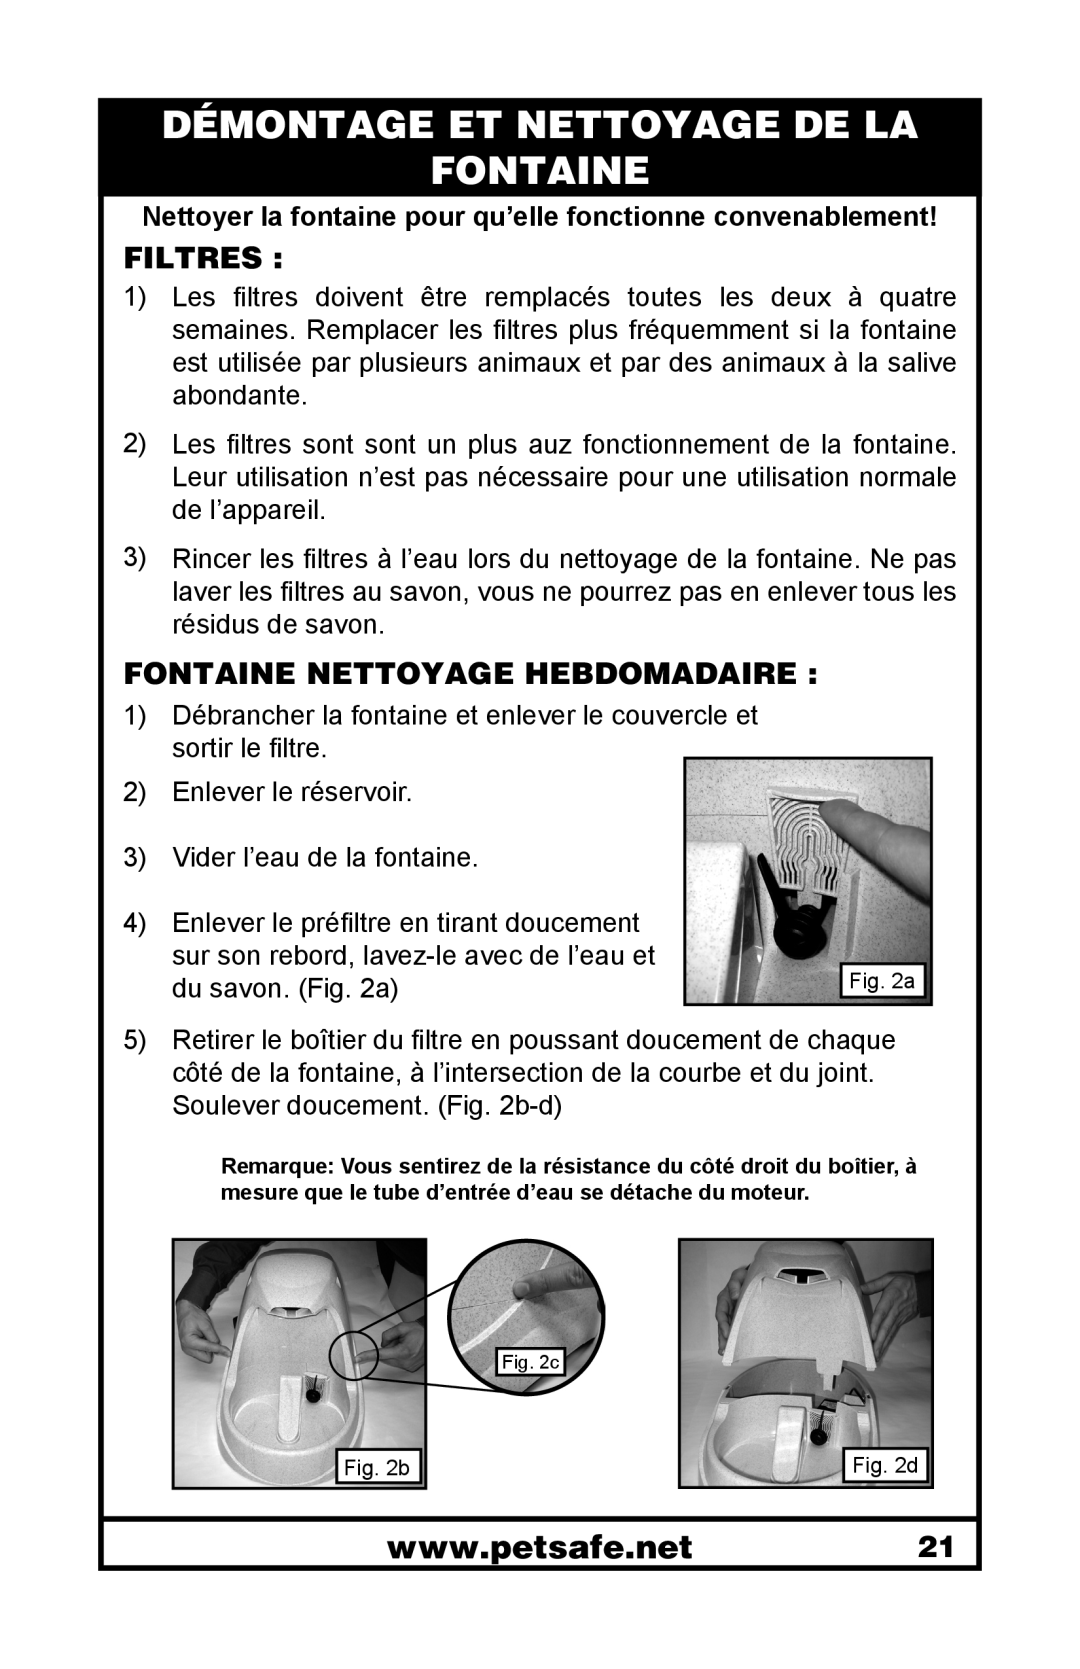 Petsafe 400-1255-19 manuel dutilisation Démontage Et Nettoyage De La Fontaine, Filtres, Fontaine Nettoyage Hebdomadaire 